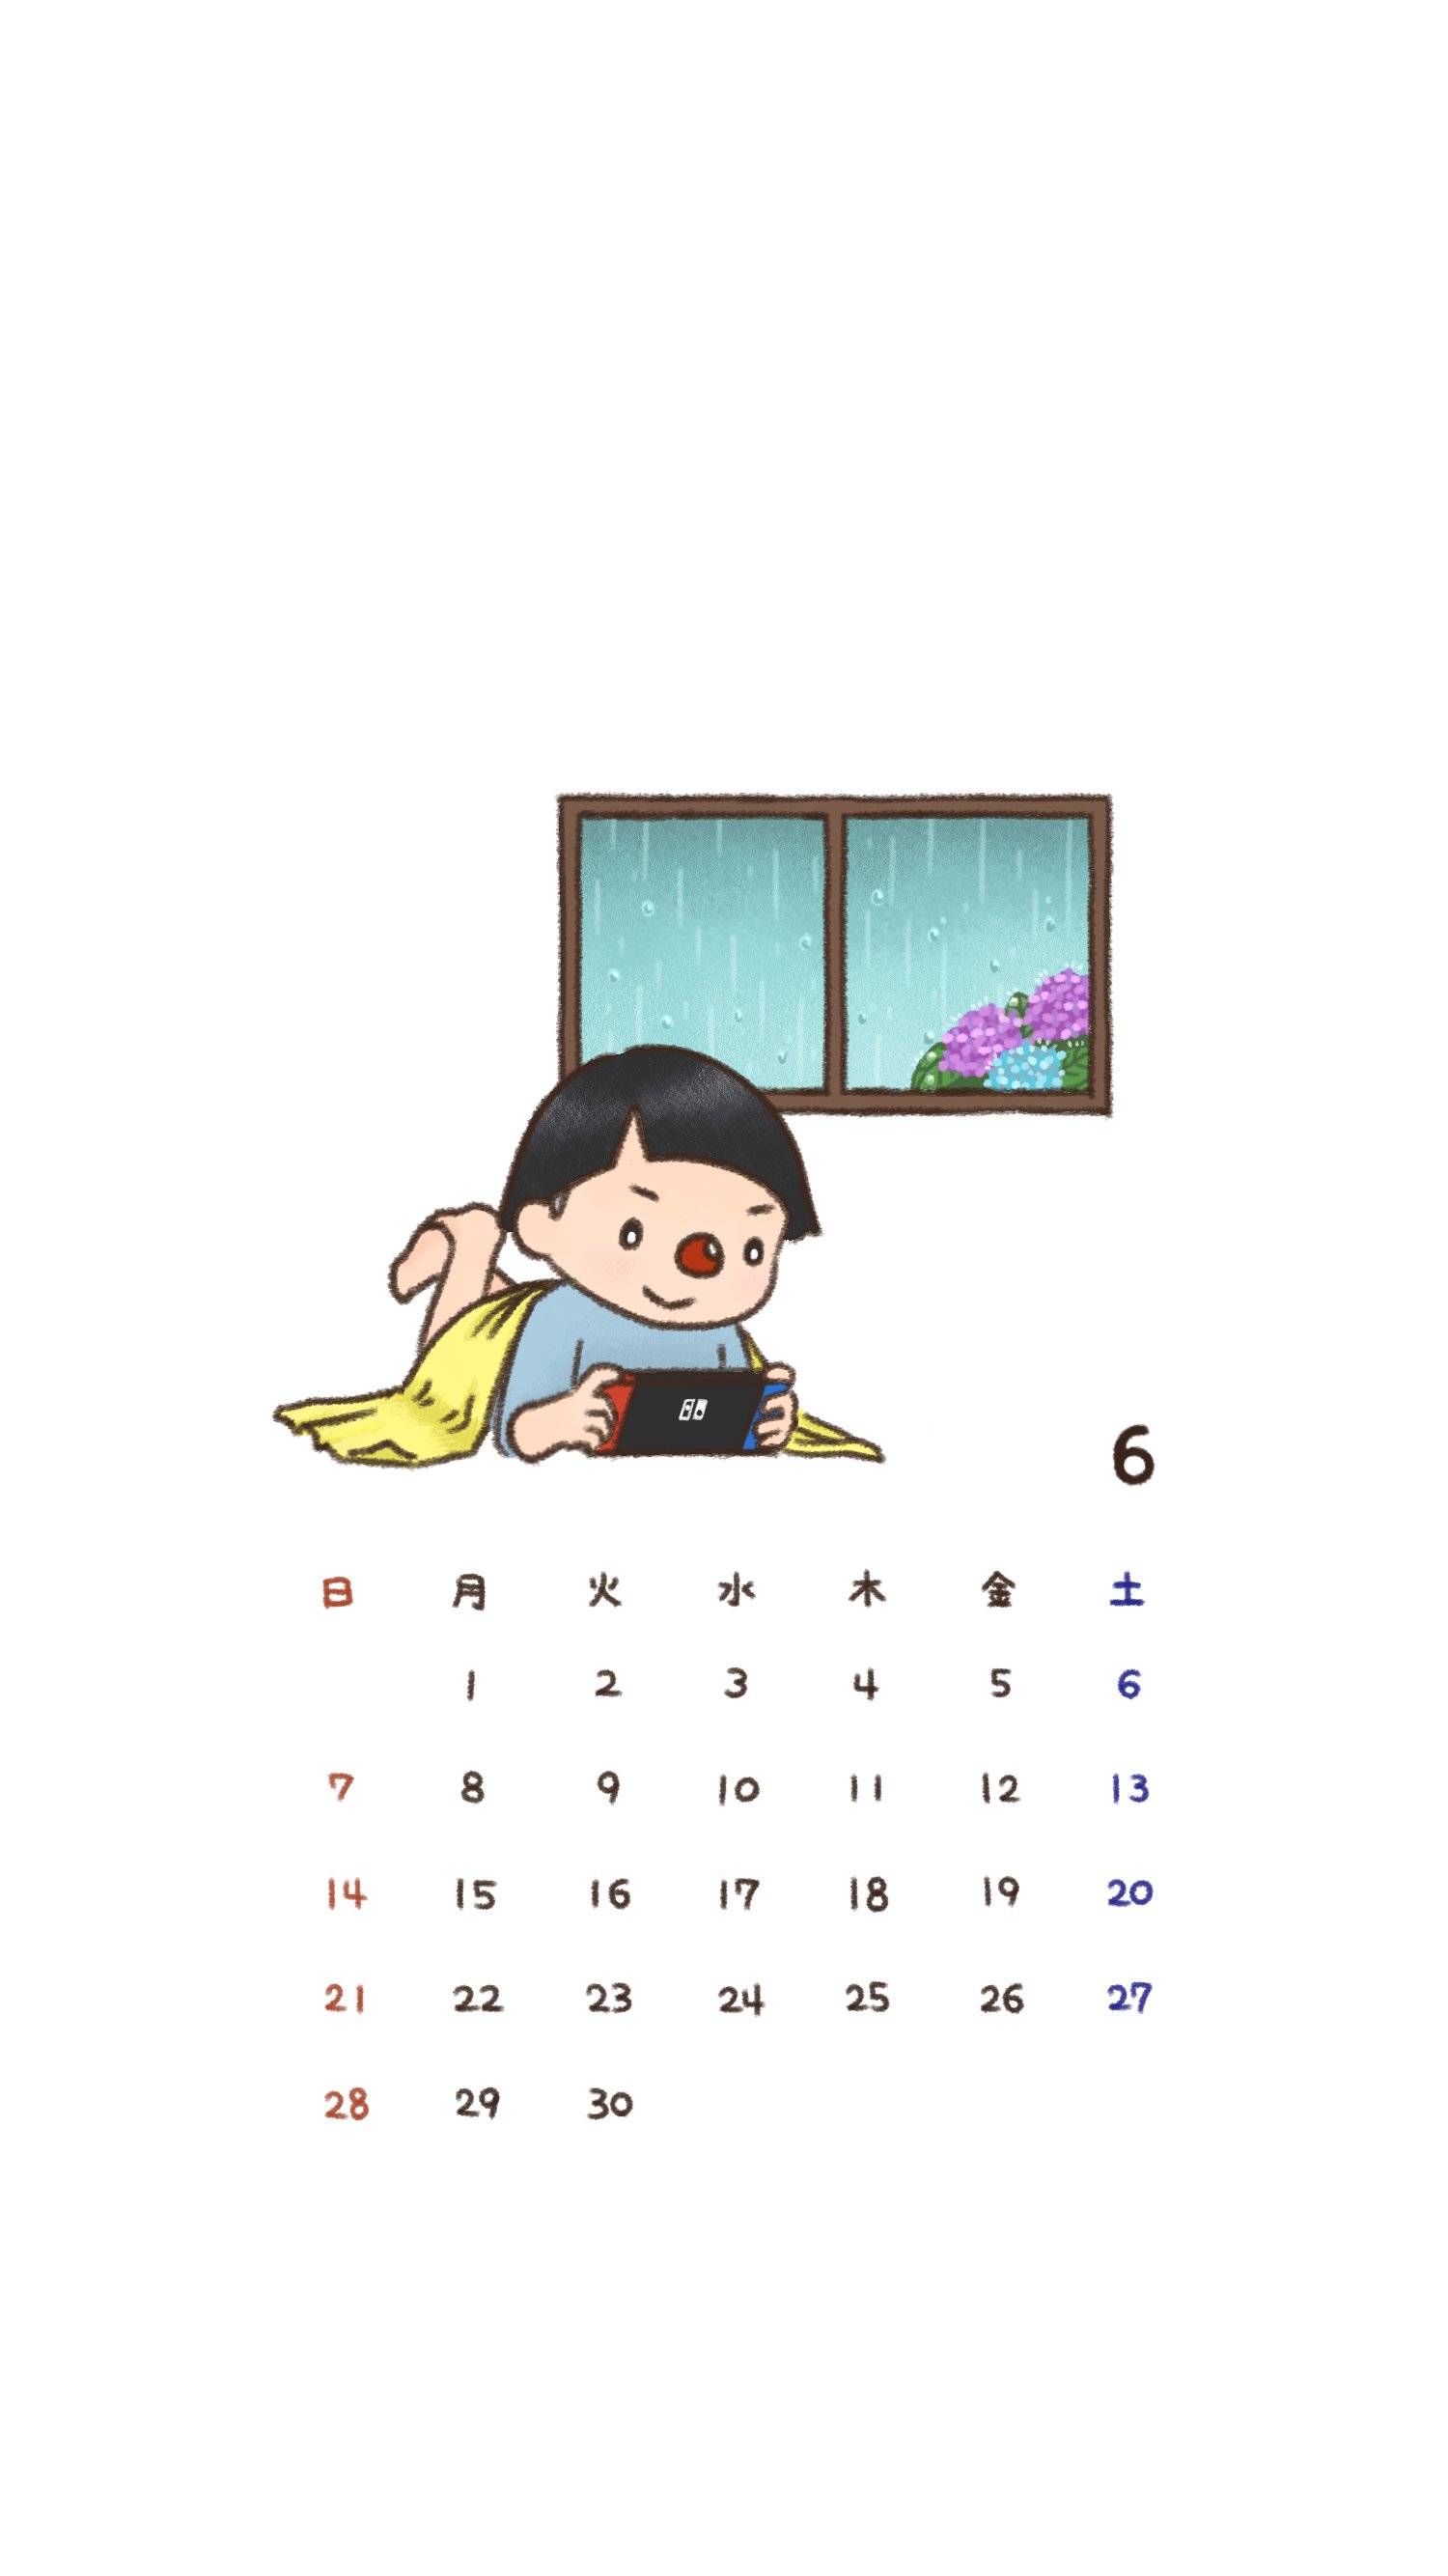 さかな スマンウータン 6月のカレンダー待ち受けです T Co 7dcucm8s6b Twitter